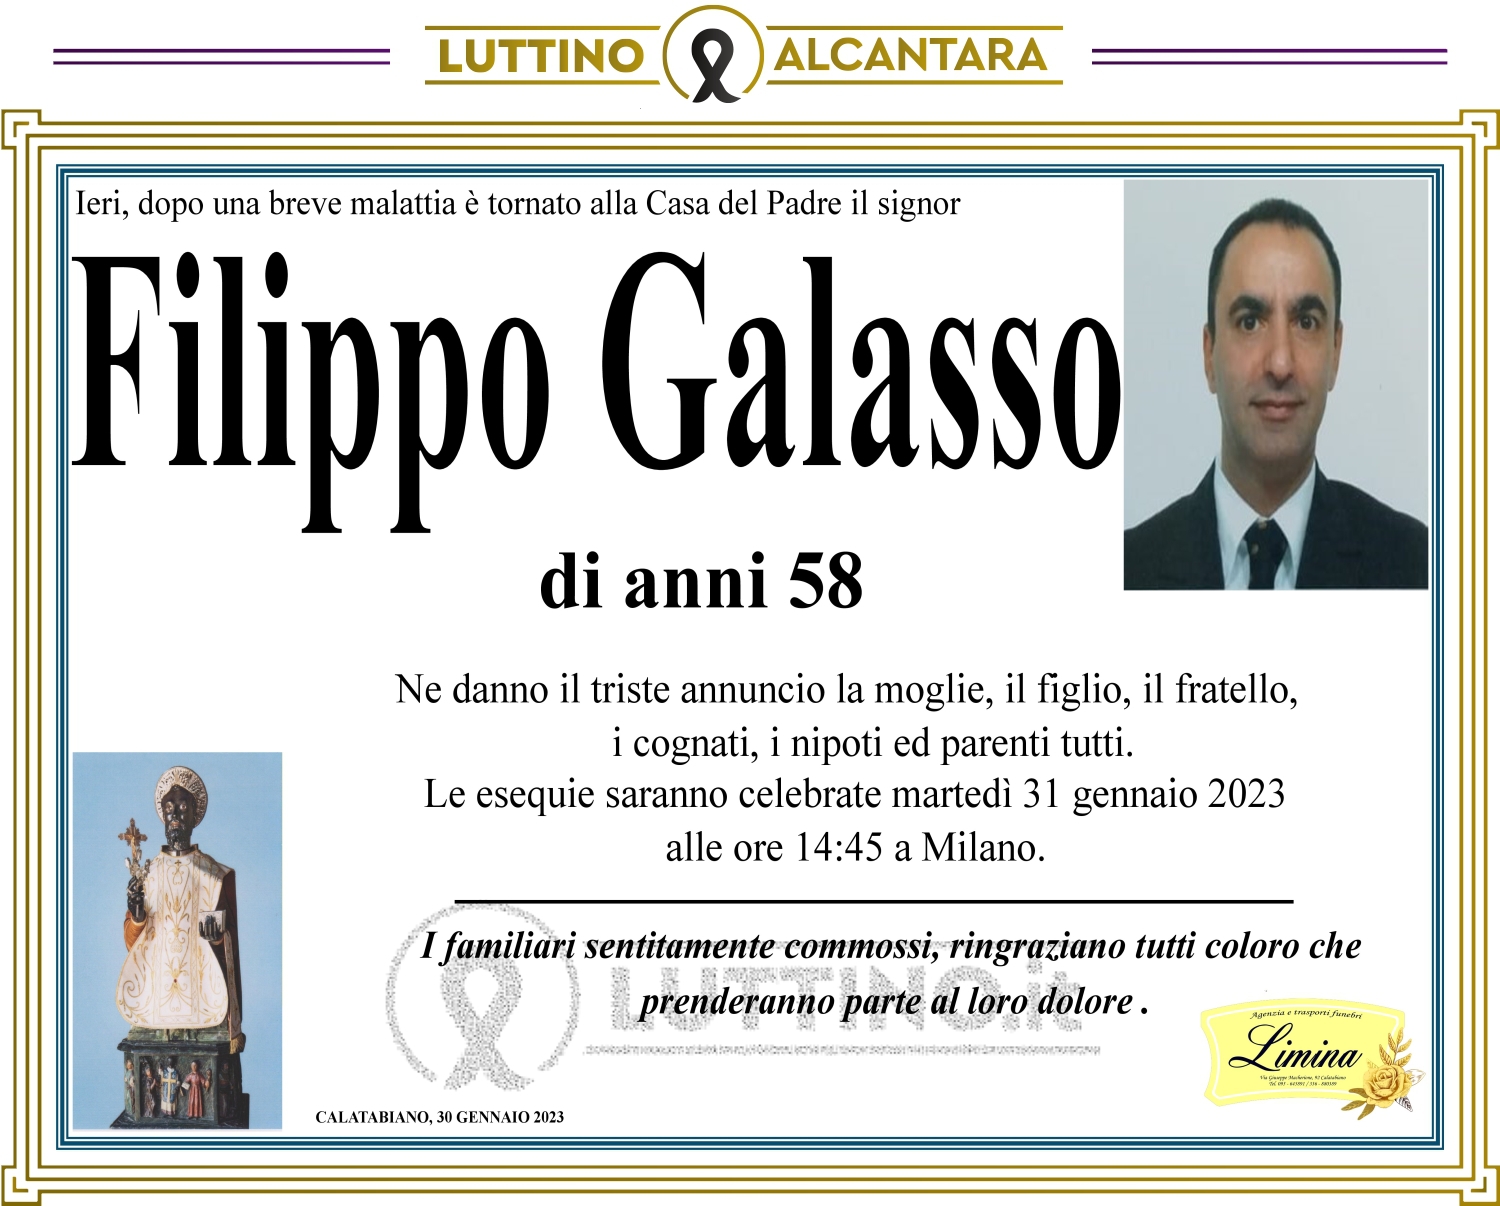 Filippo Galasso